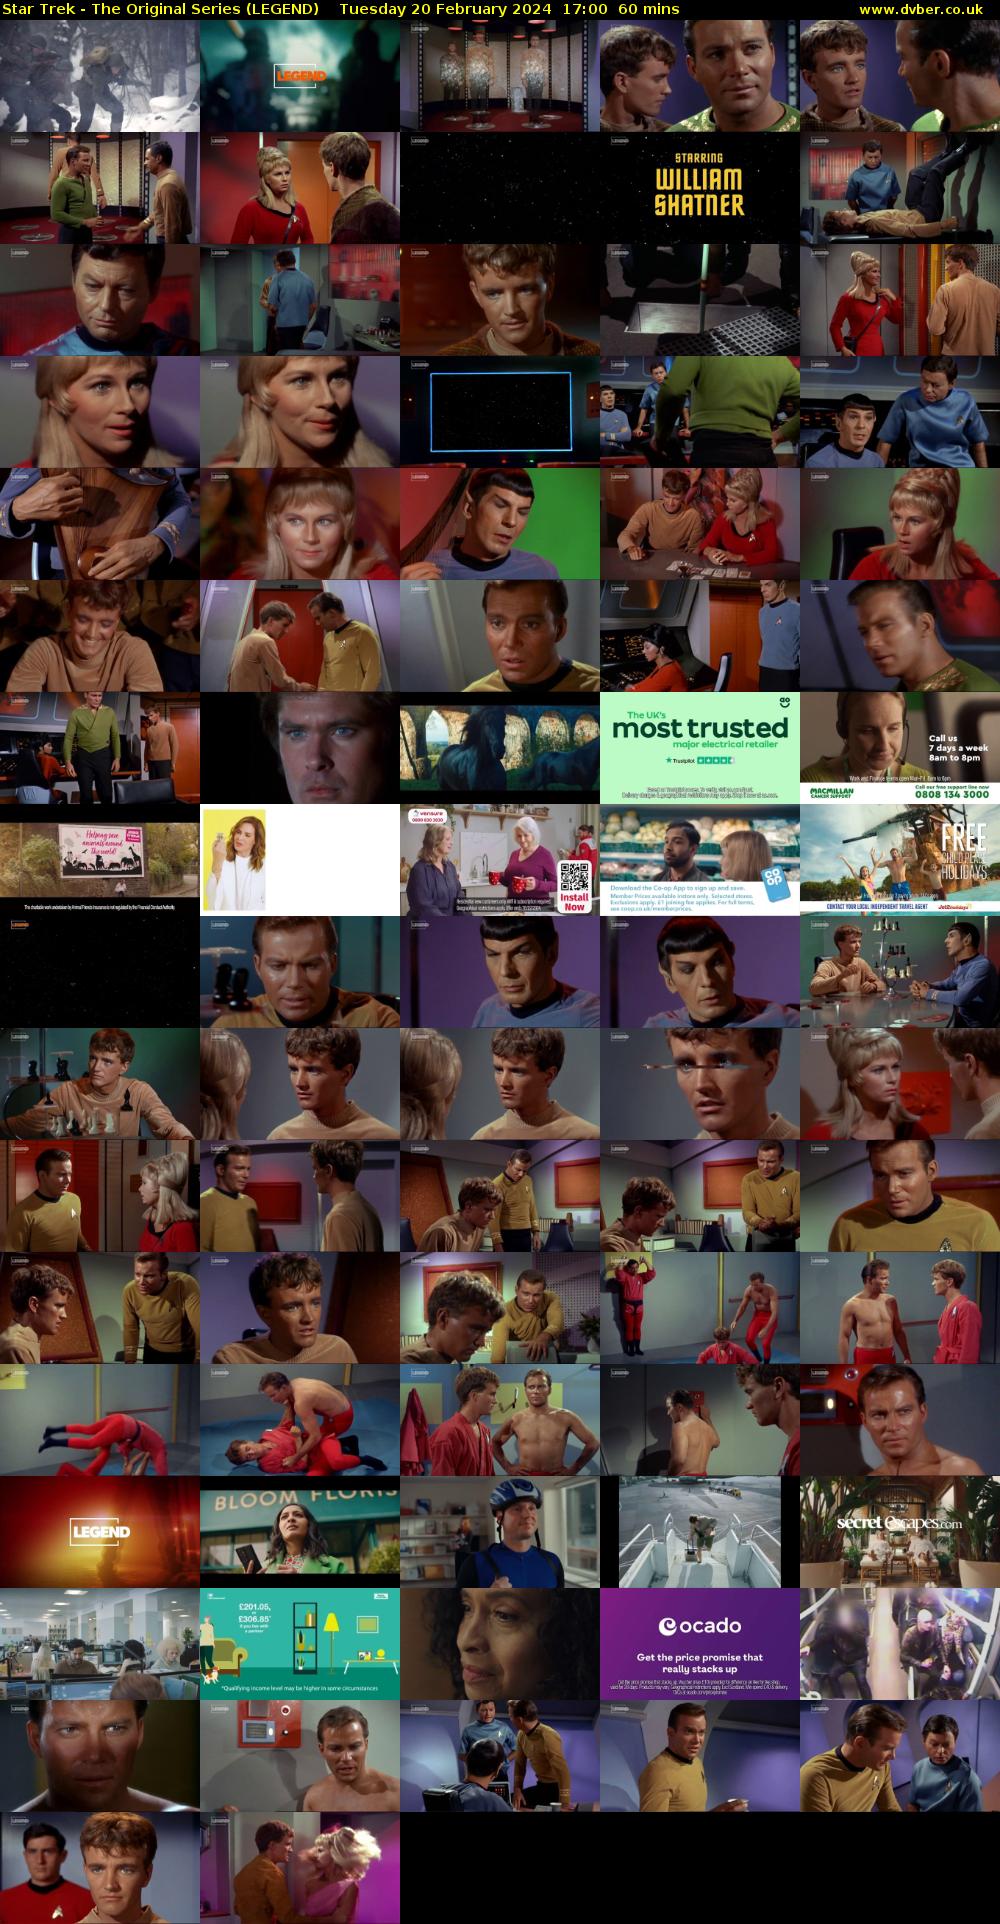 Star Trek - The Original Series (LEGEND) Tuesday 20 February 2024 17:00 - 18:00